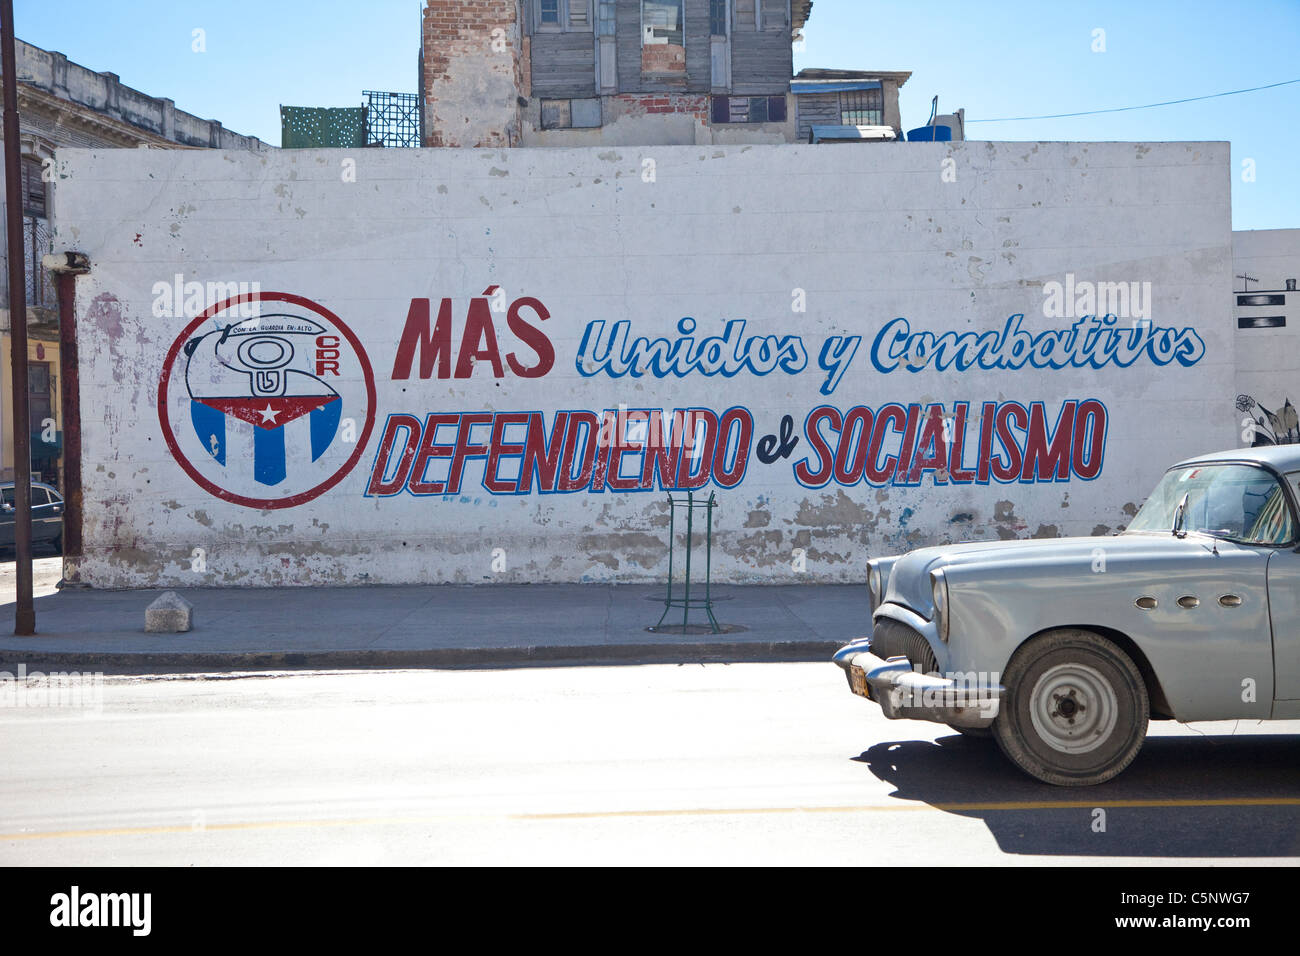 Kuba, Havanna. Politisches Schlagwort: Solidarische und kämpferisch, Sozialismus zu verteidigen. " 1954-Buick. Stockfoto